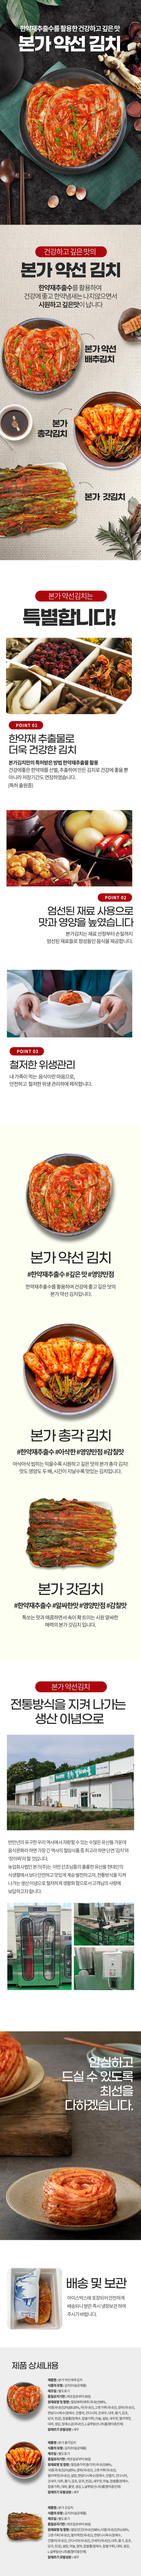 한국의 김치는 대표적인 채소발효식품입니다